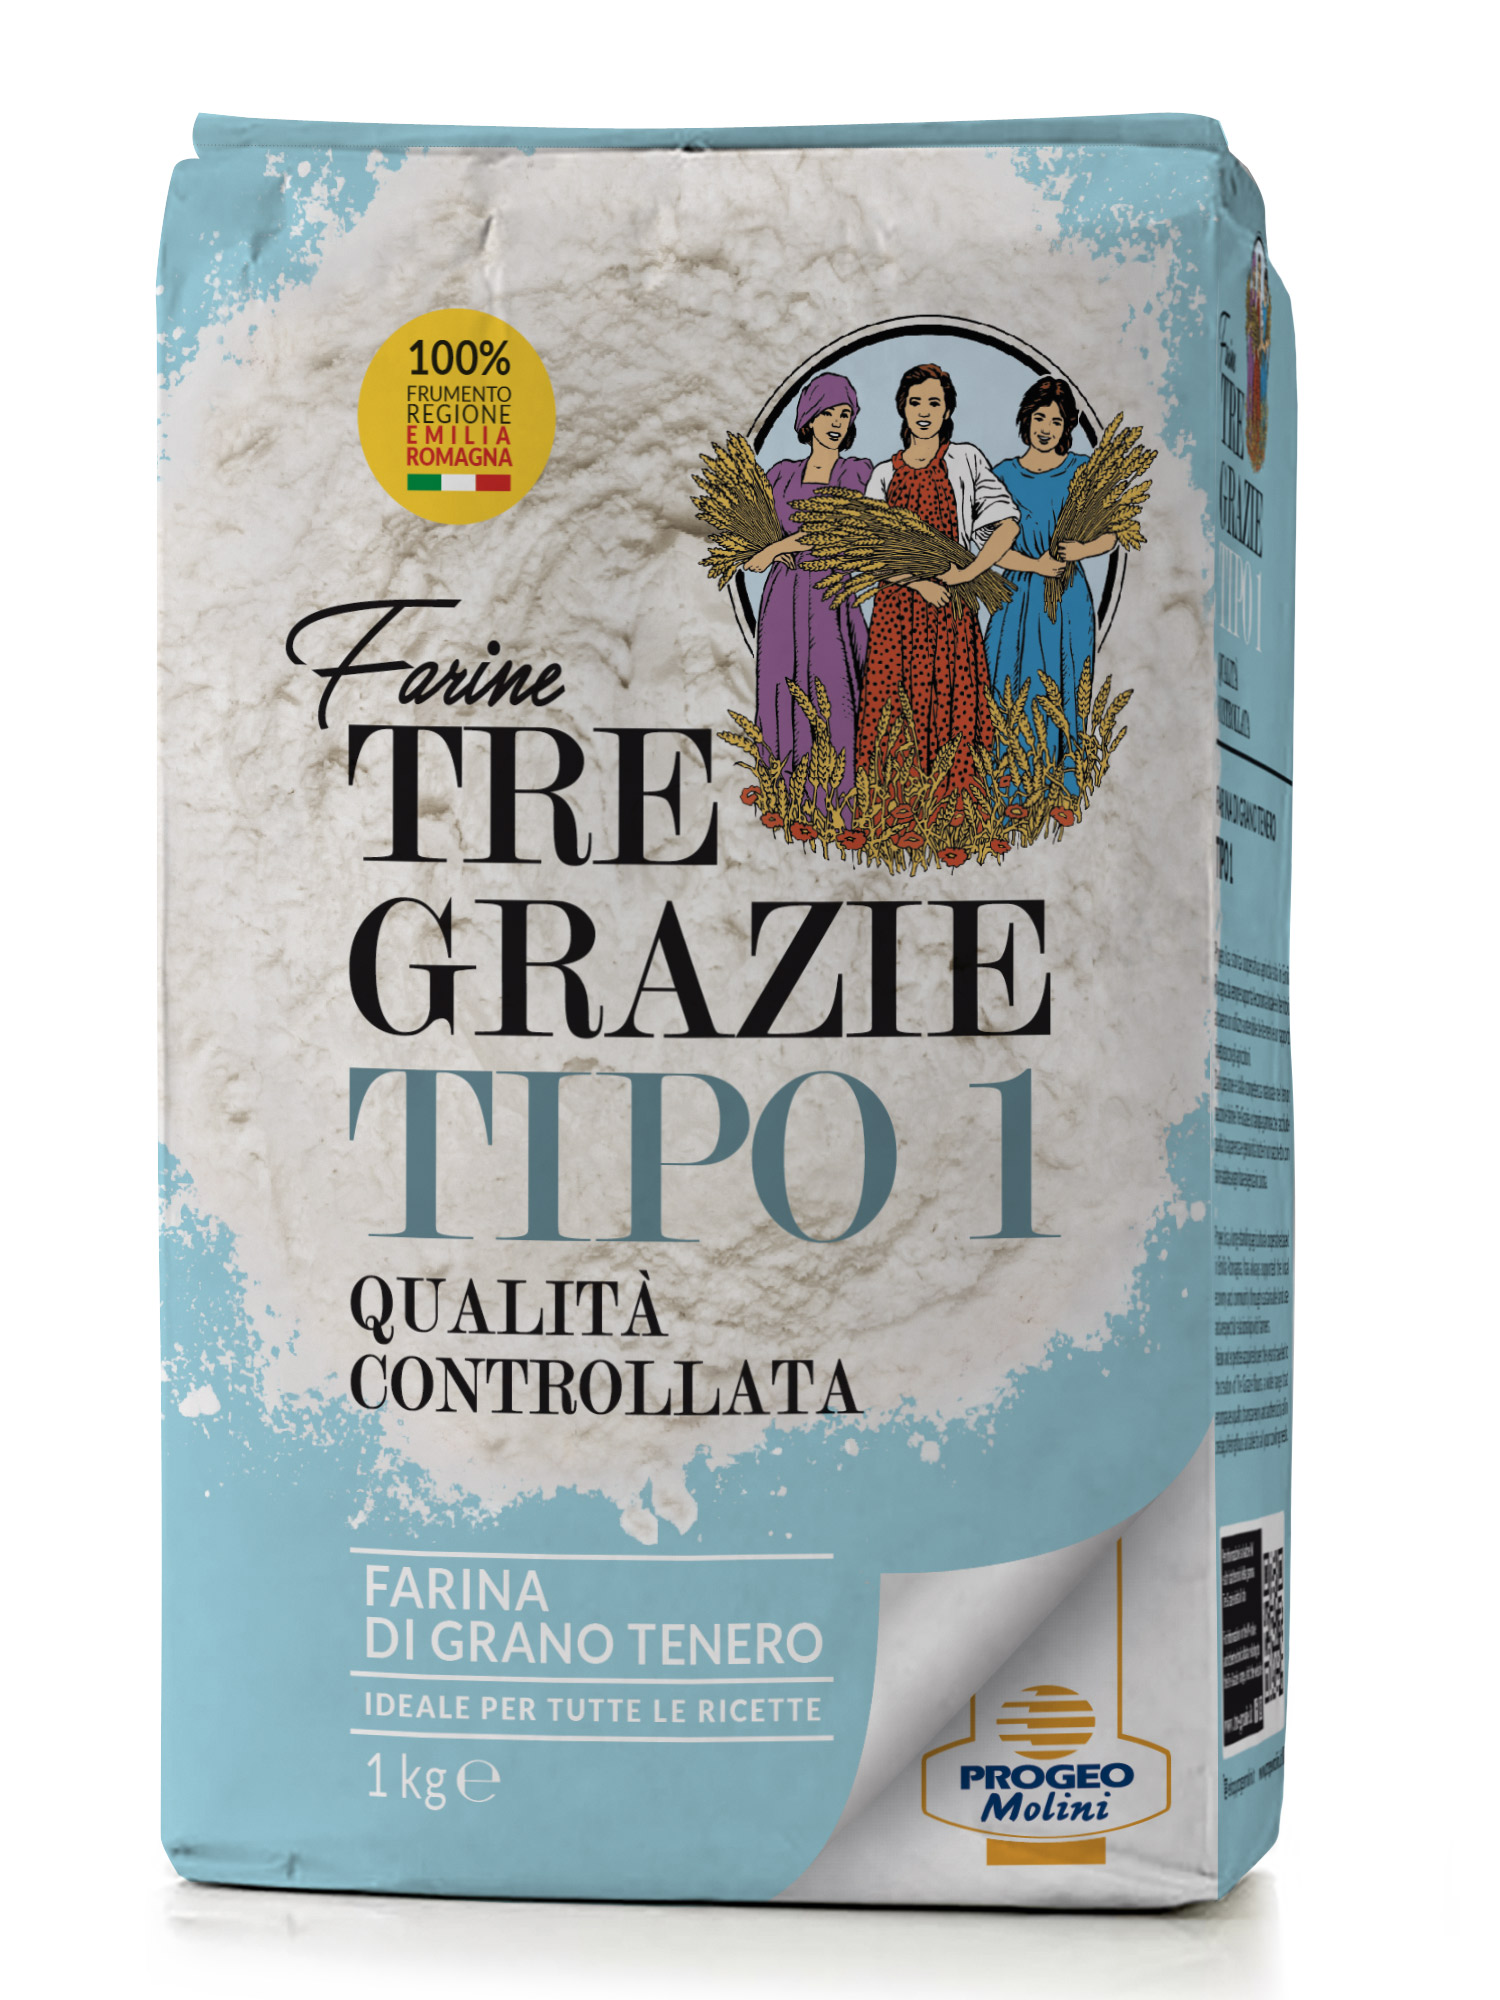 Farina Tipo 1 100% frumento Emilia e Romagna Qc